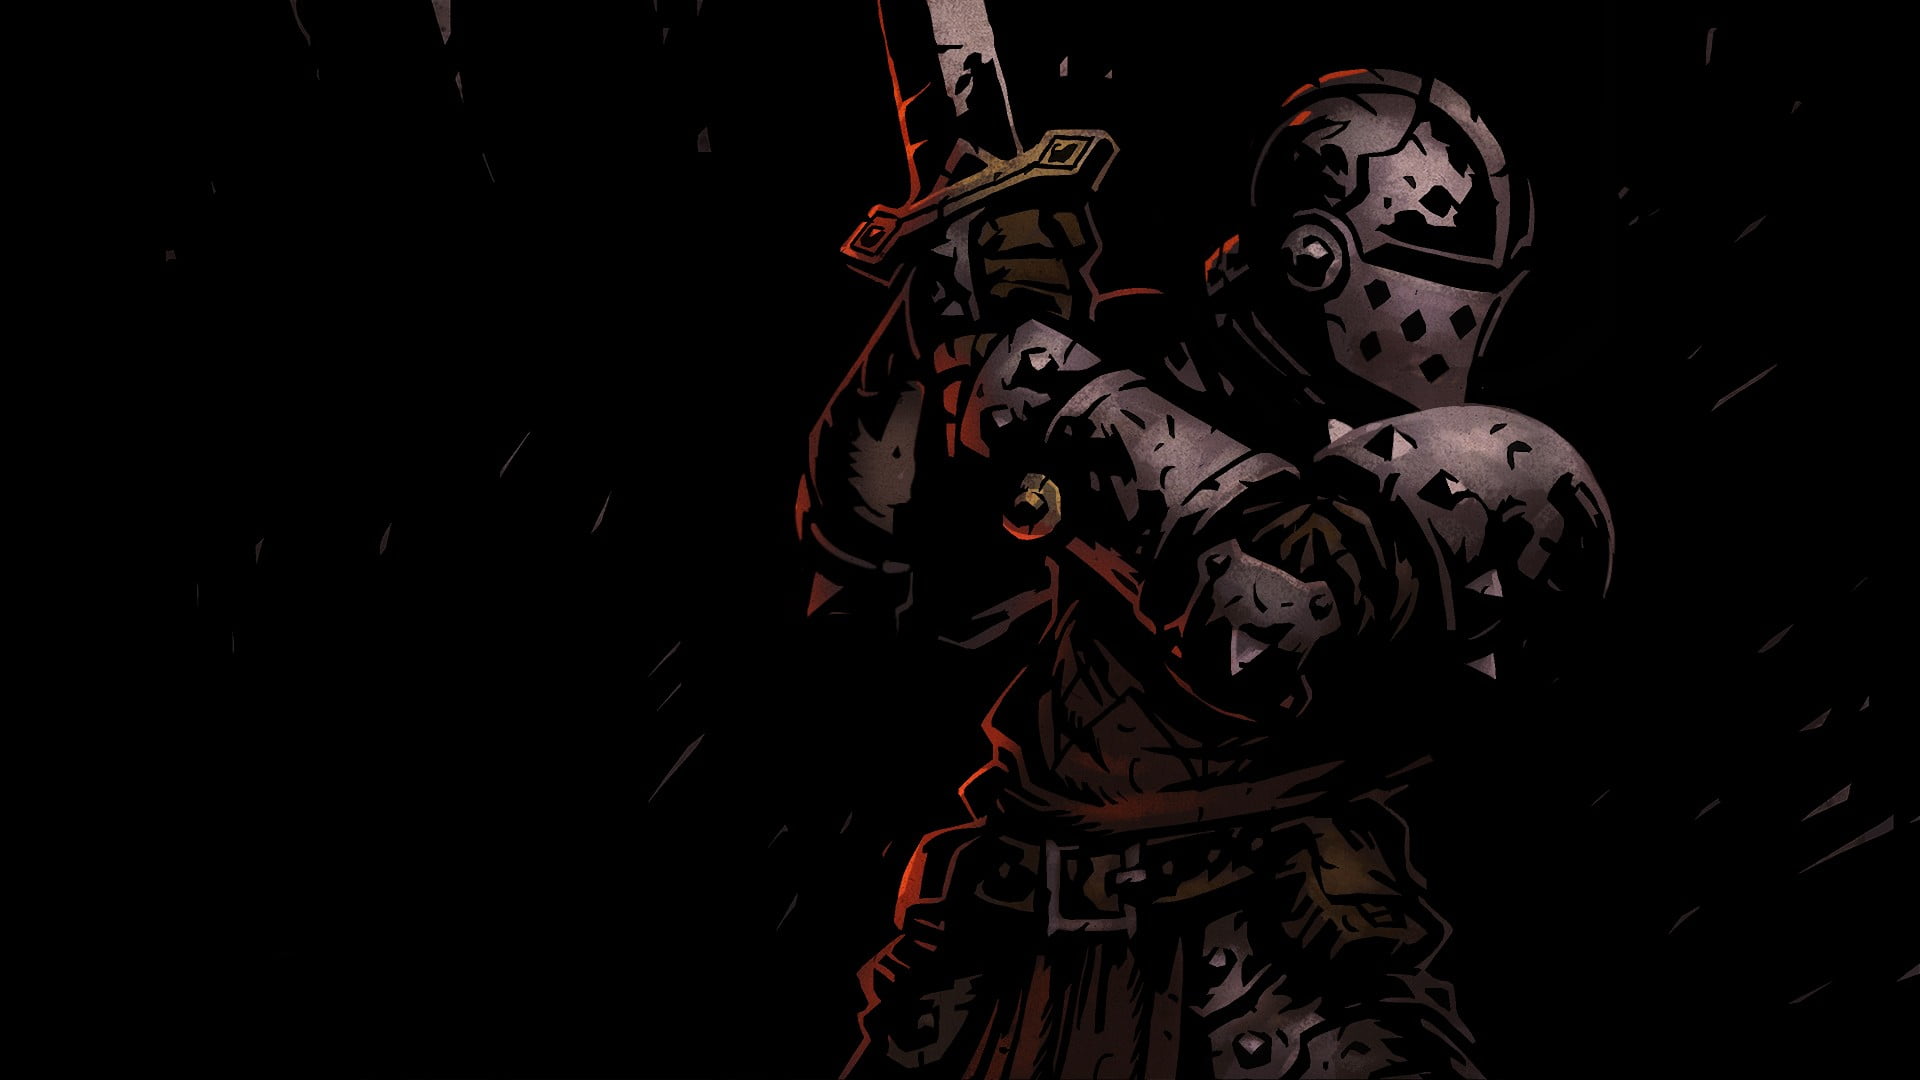 gladiator soldier illustration, Darkest Dungeon, video games, dark, knight